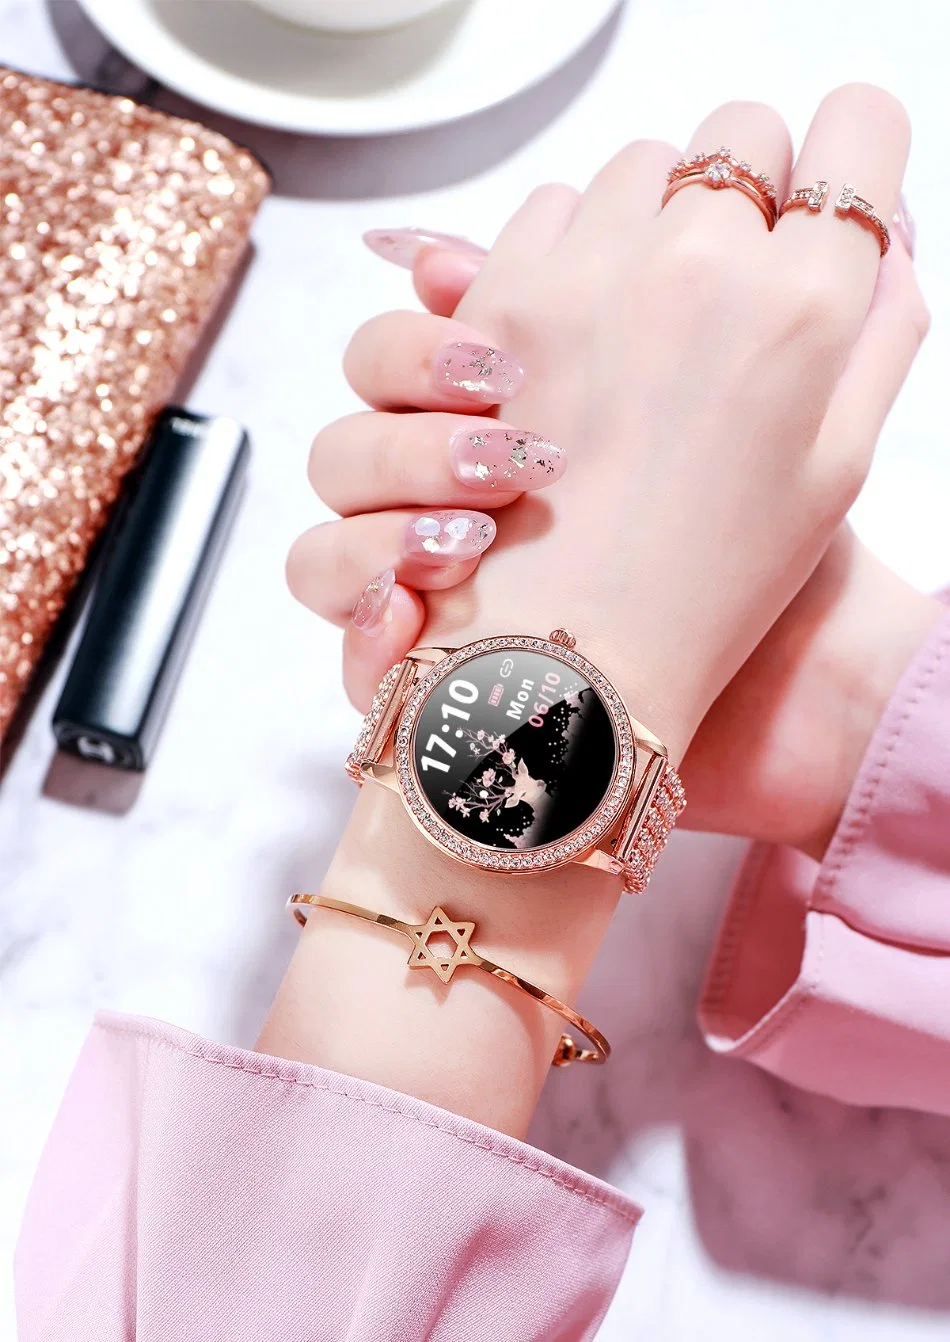 Lw10 Fashion Lady Smart Watch Blood Oxygen Pressure Smartwatch for Women Pk Lw07 Lw20